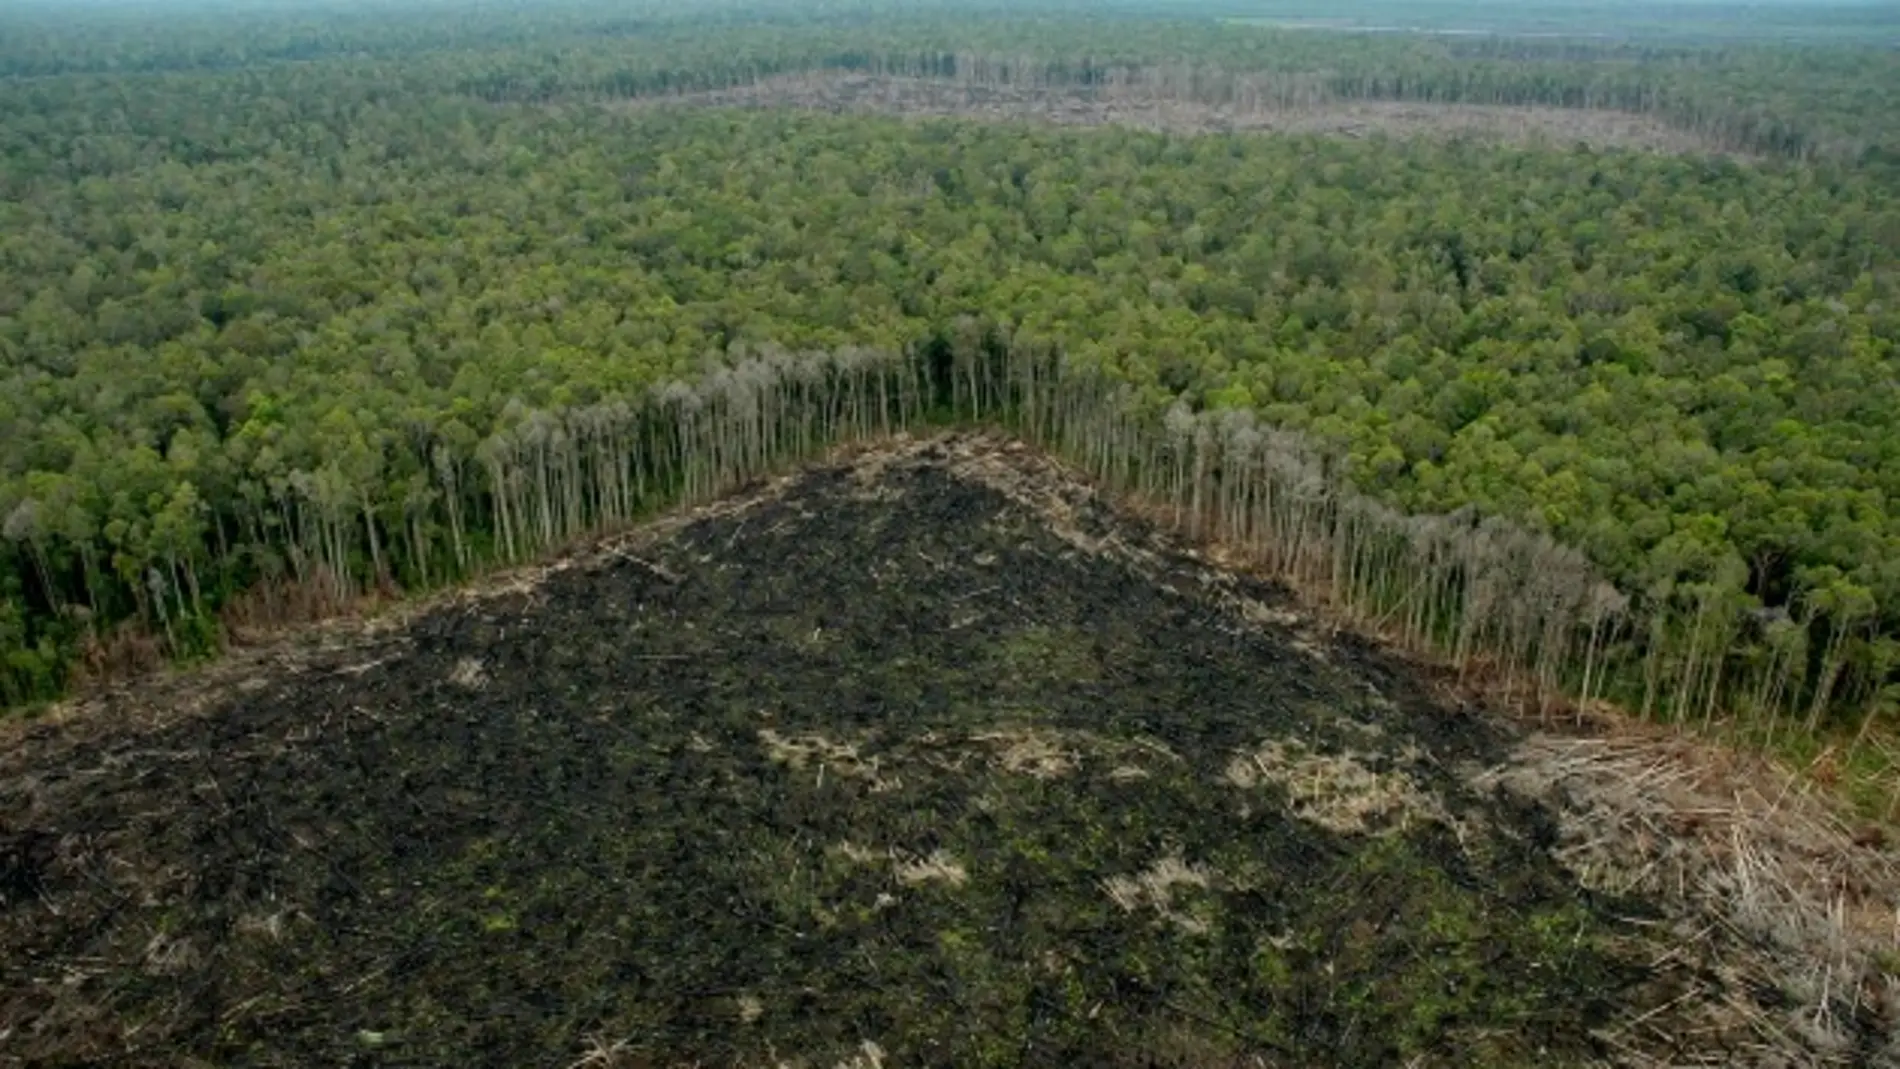 Selva talada ilegalmente fuera de las concesiones de APP, en Riau (Sumatra)